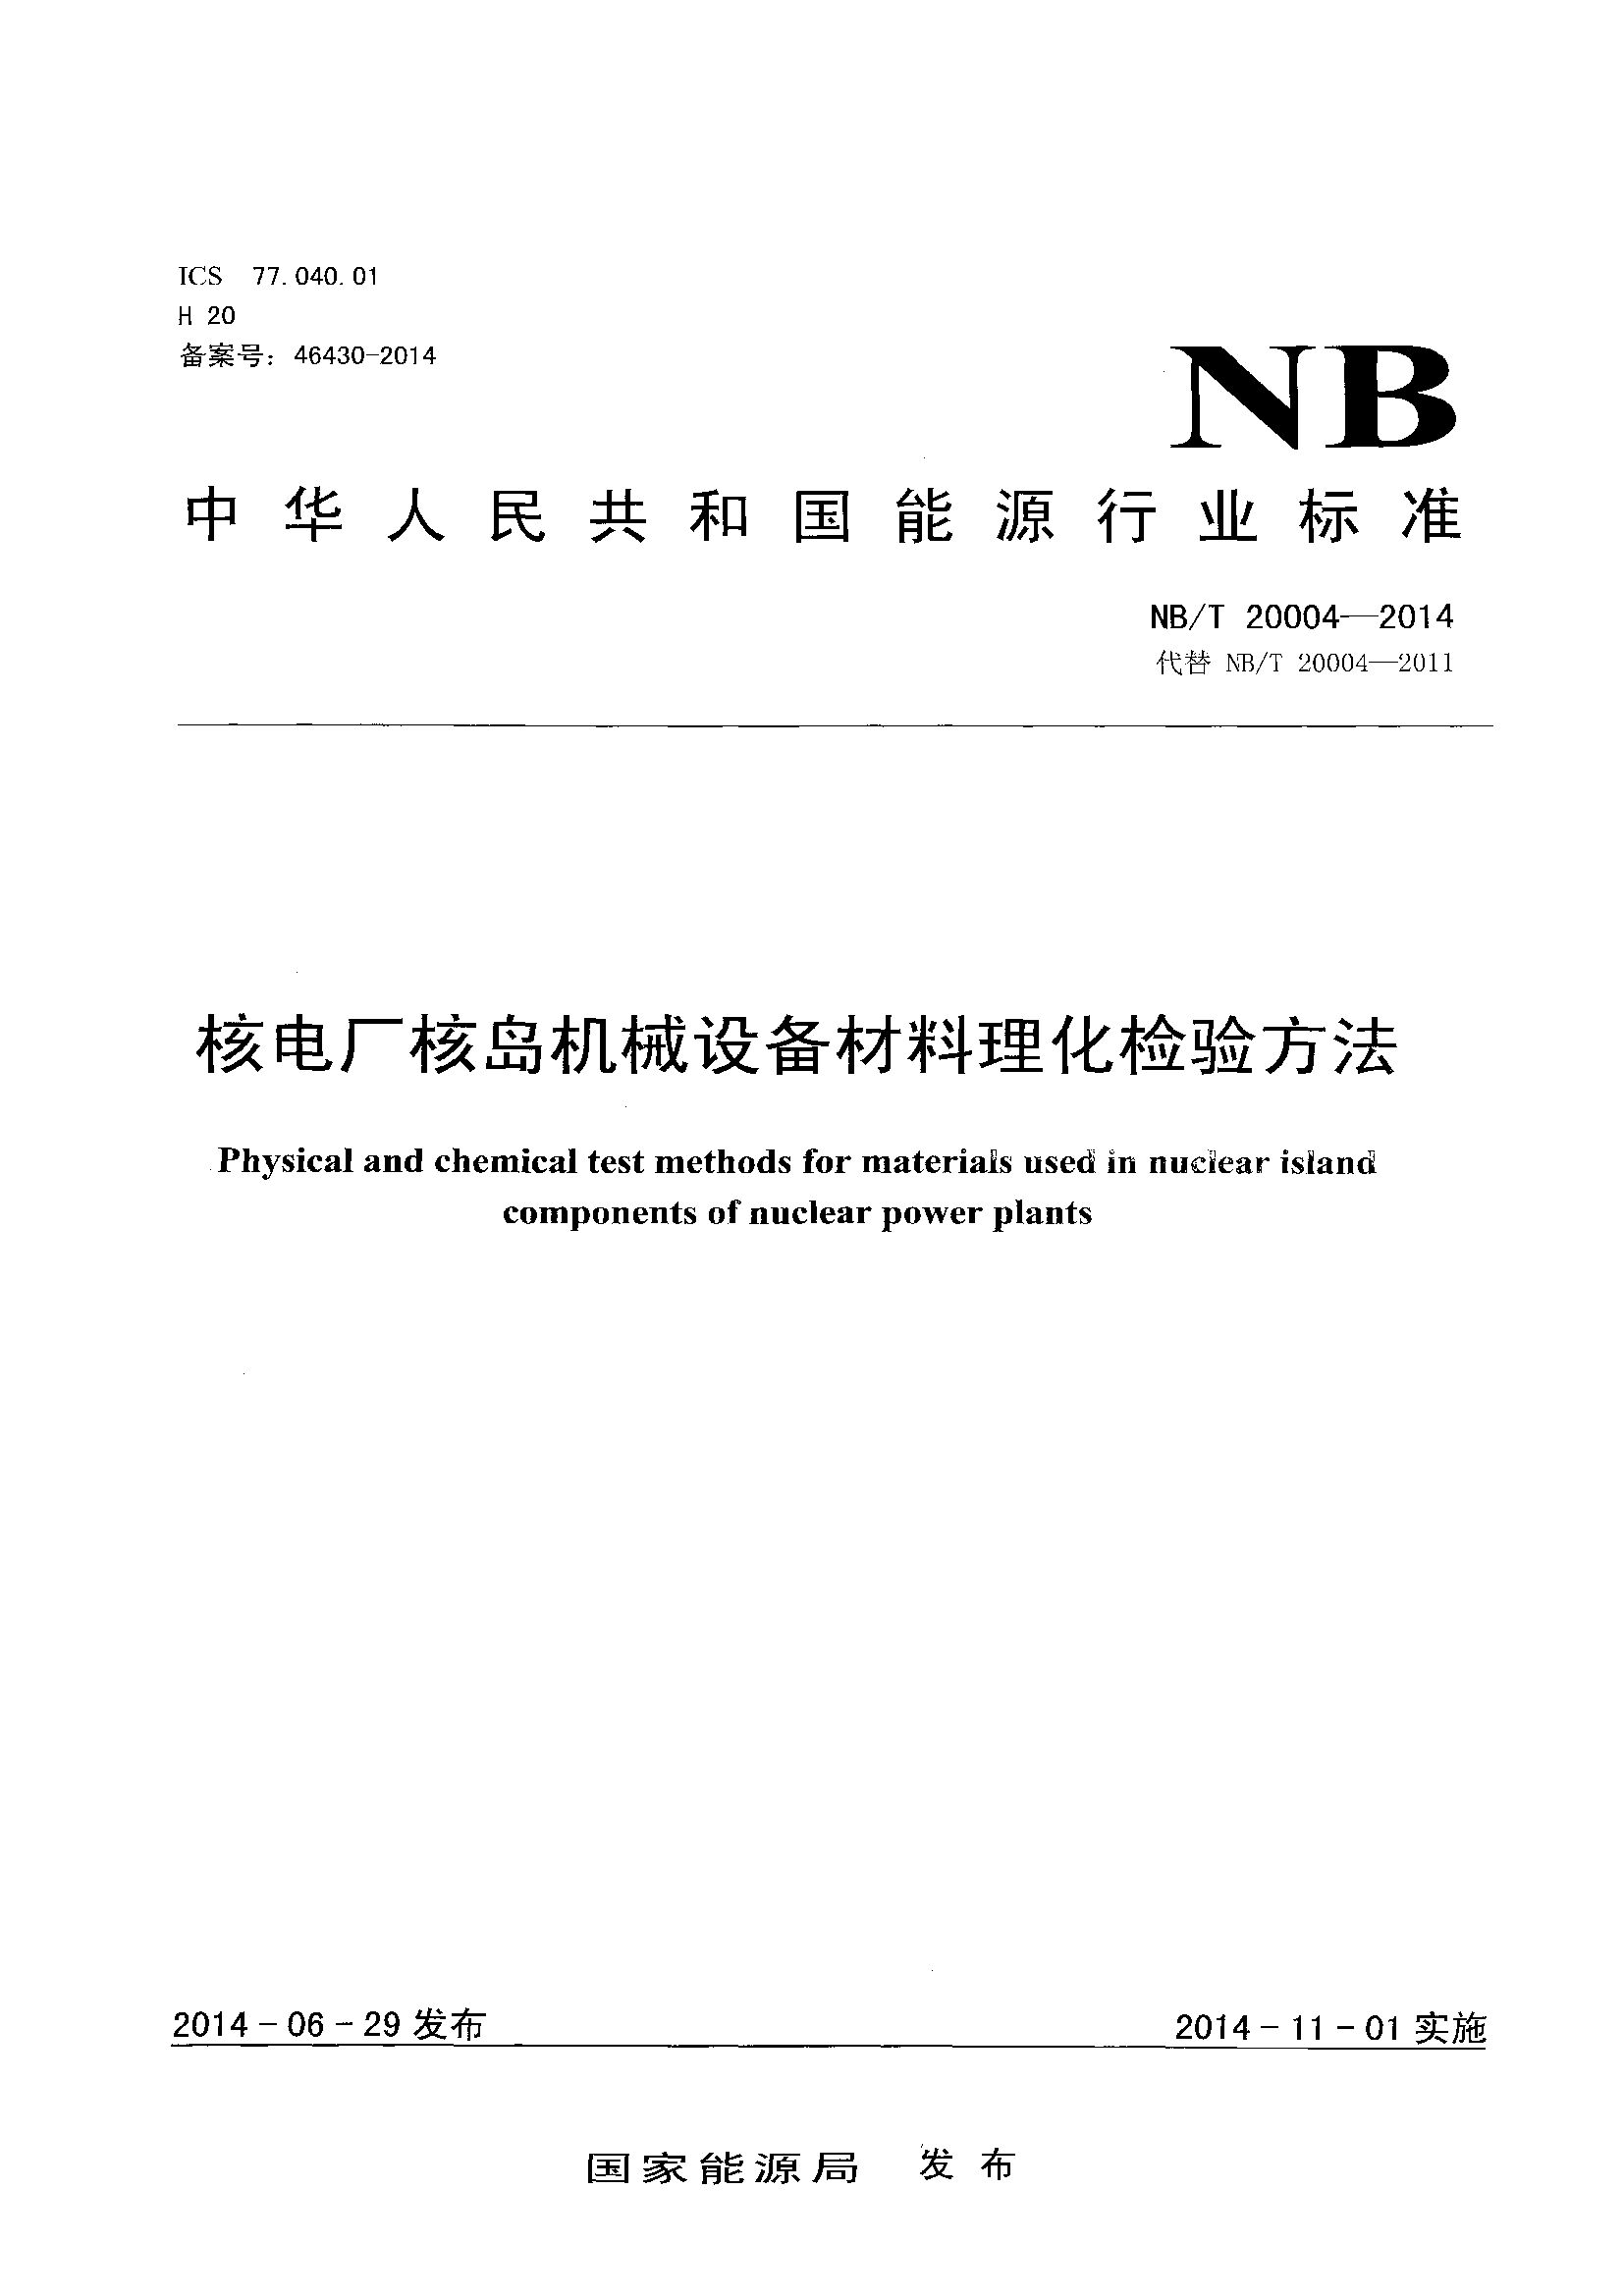 NB/T 20004-2014封面图